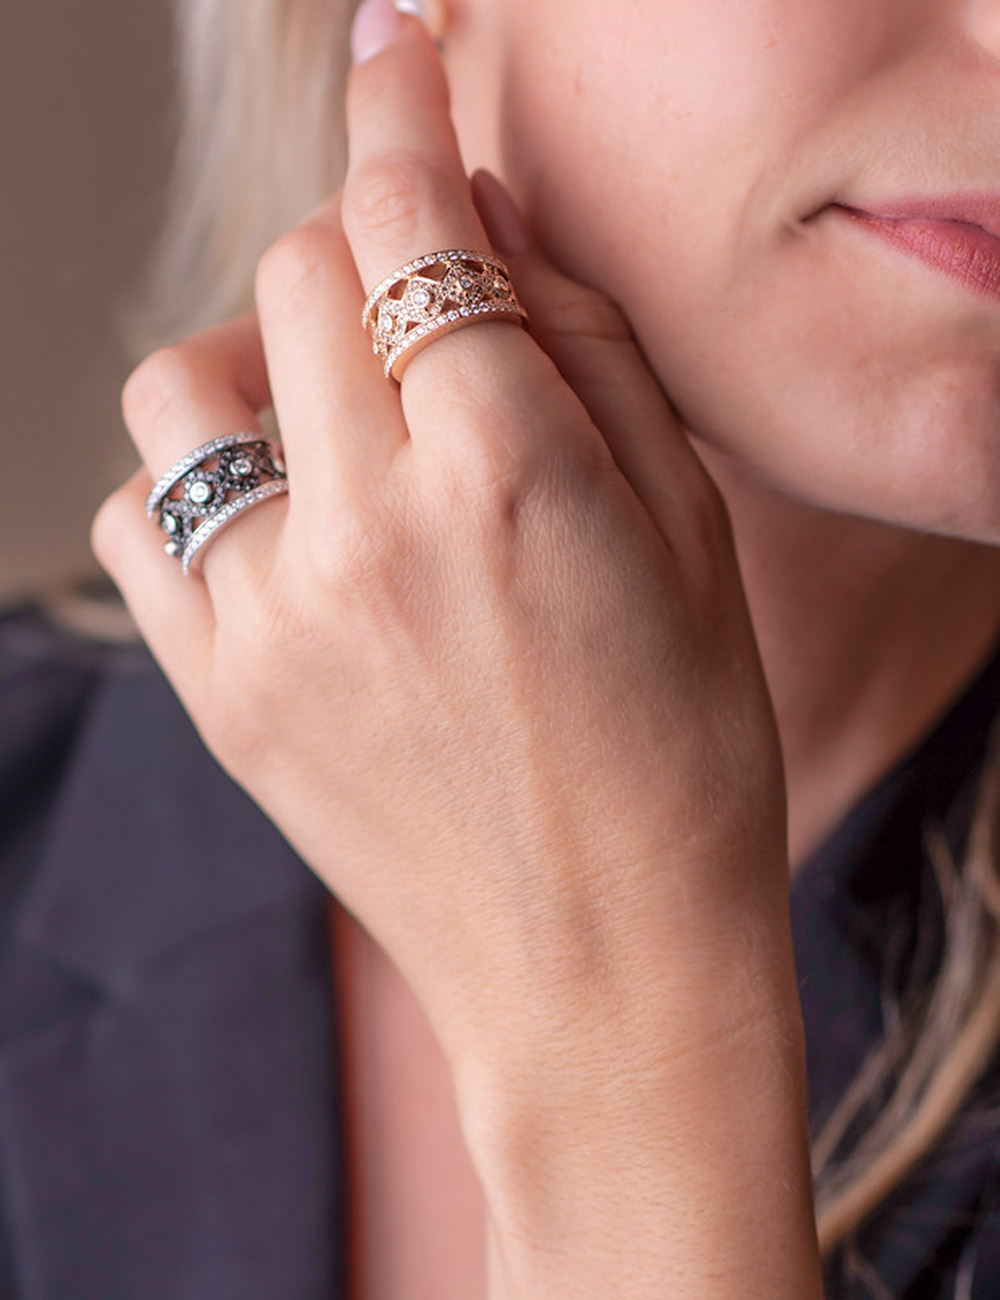 Bague Rock féminine en or rose avec diamants blancs et bruns, design élégant et moderne.